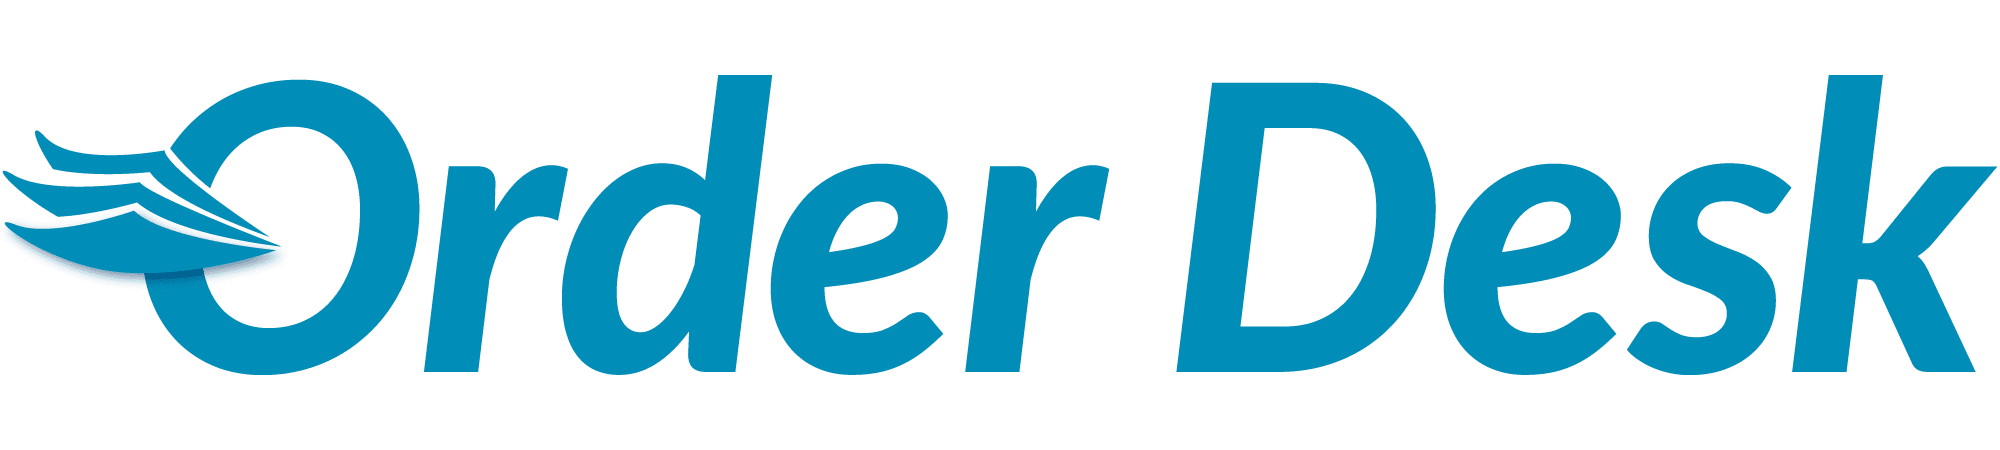 OrderDesk-integration-partner-logo